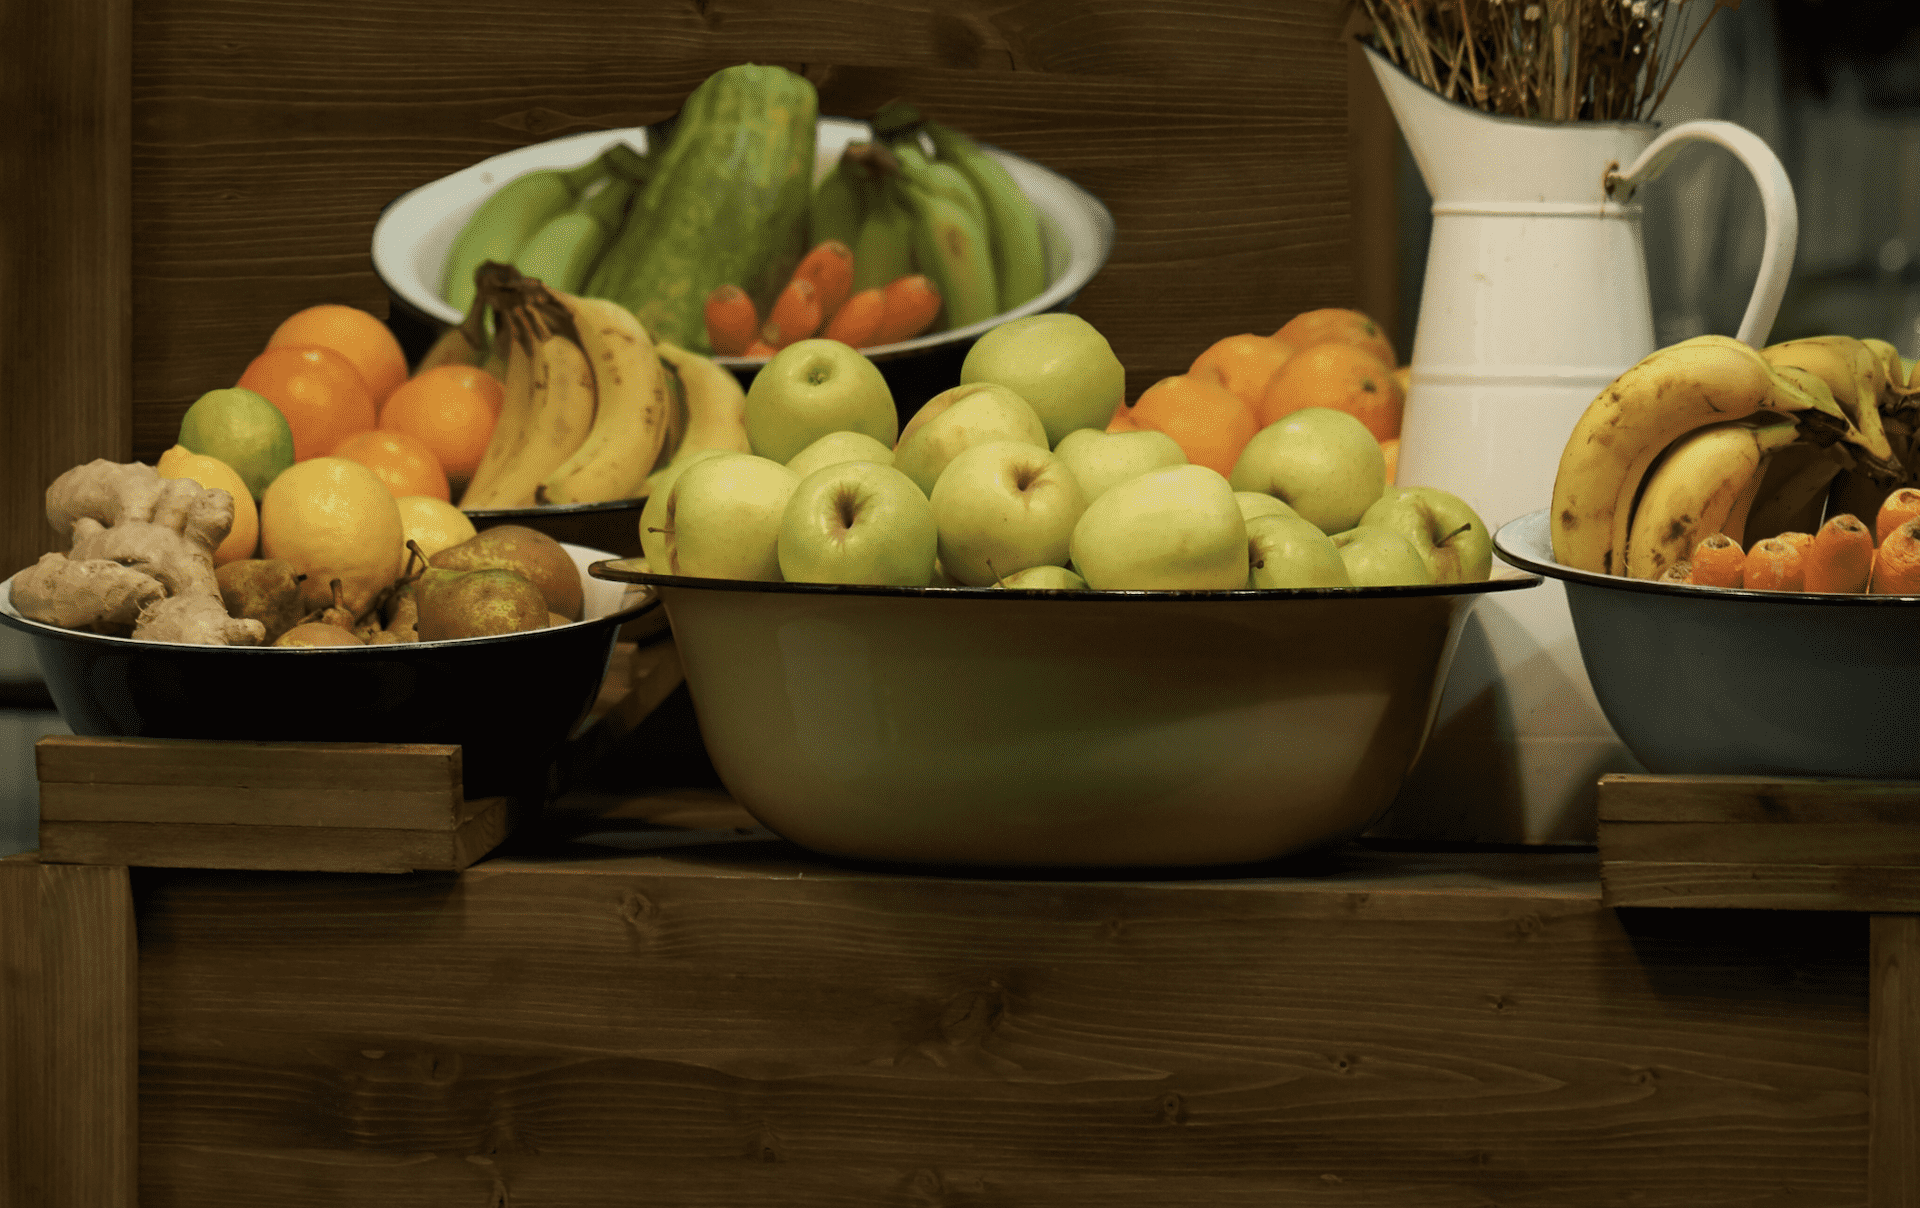 ما أفضل كمية نتناولها من الفاكهة والخضروات يوميا من أجل عمر مديد؟ - أبحاث - طب اليوم